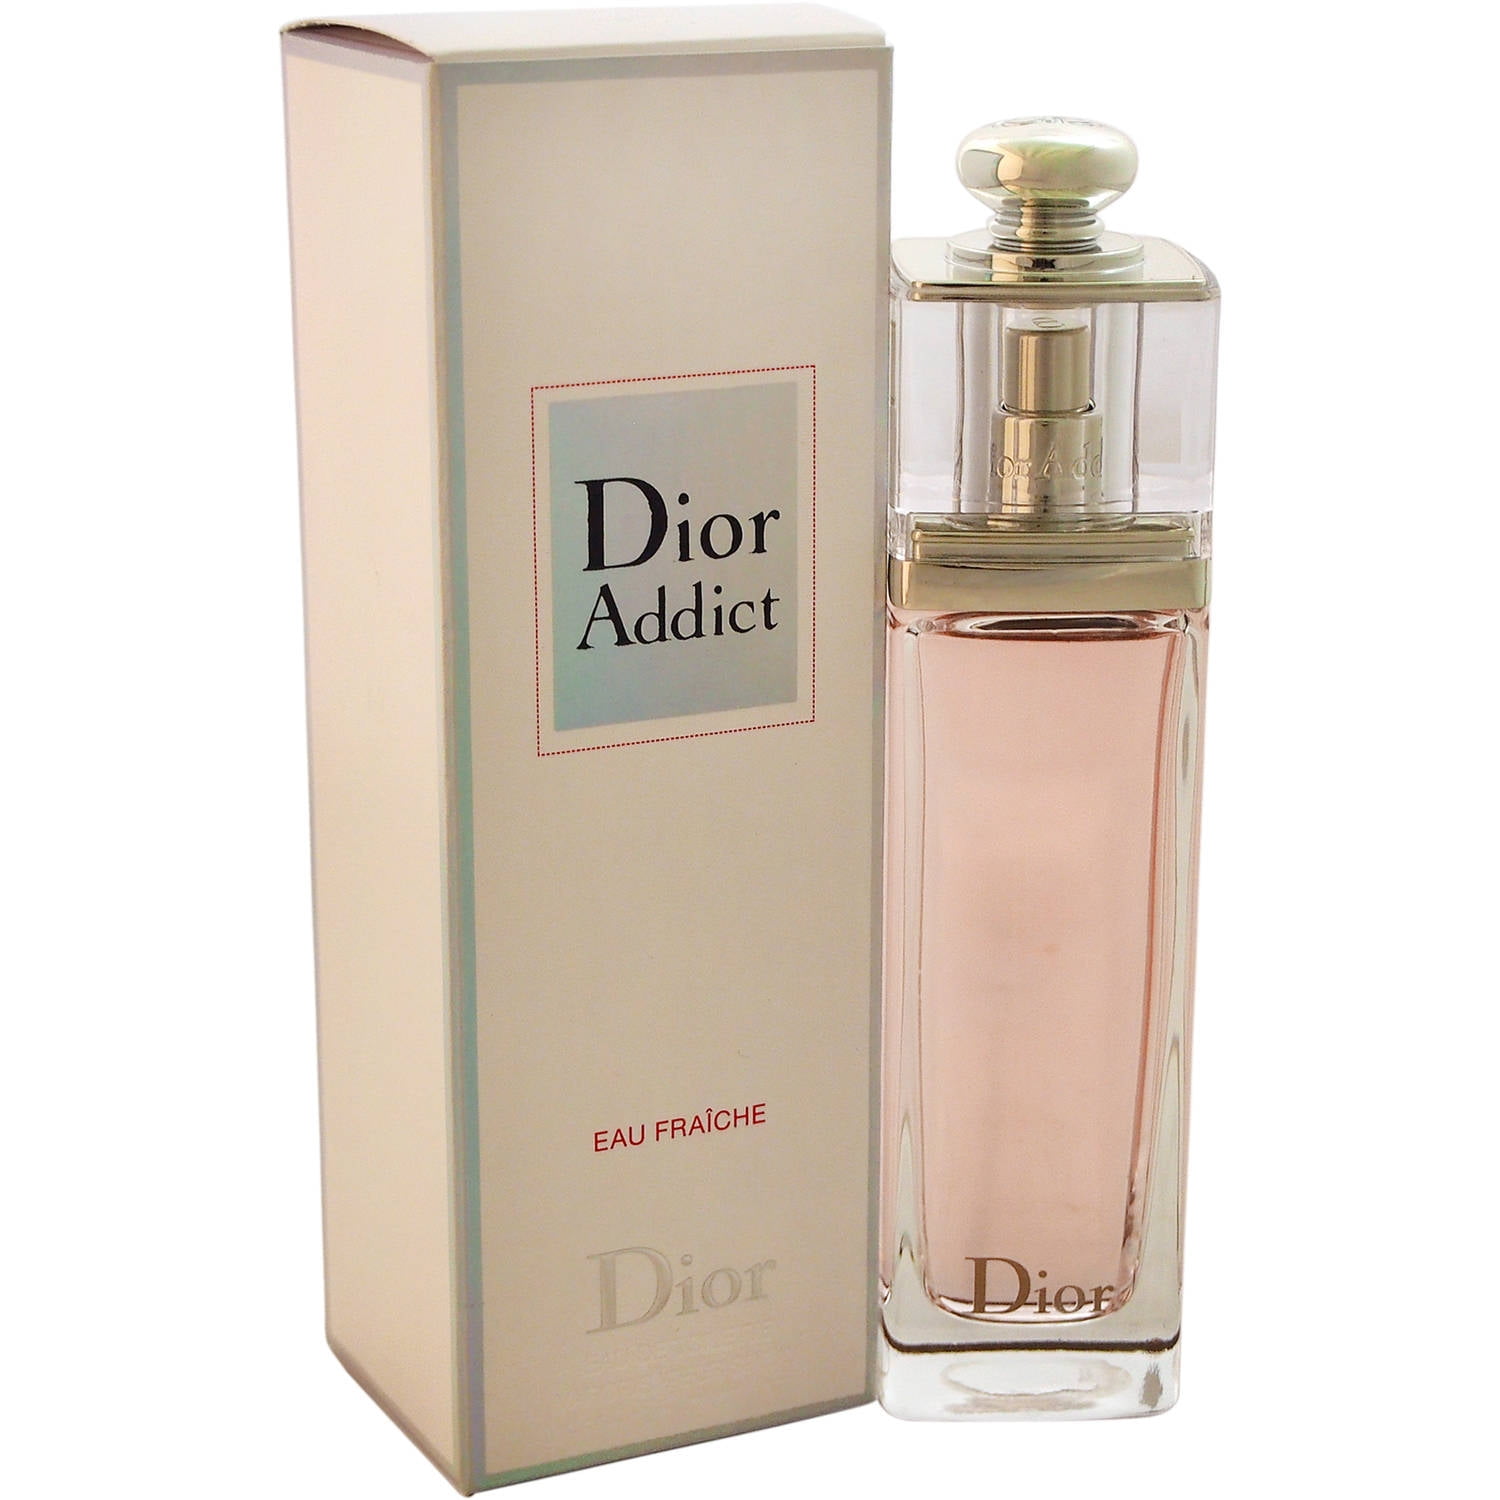 Dior Addict Eau Fraiche  Perfume247vn  Shop nước hoa chính hãng